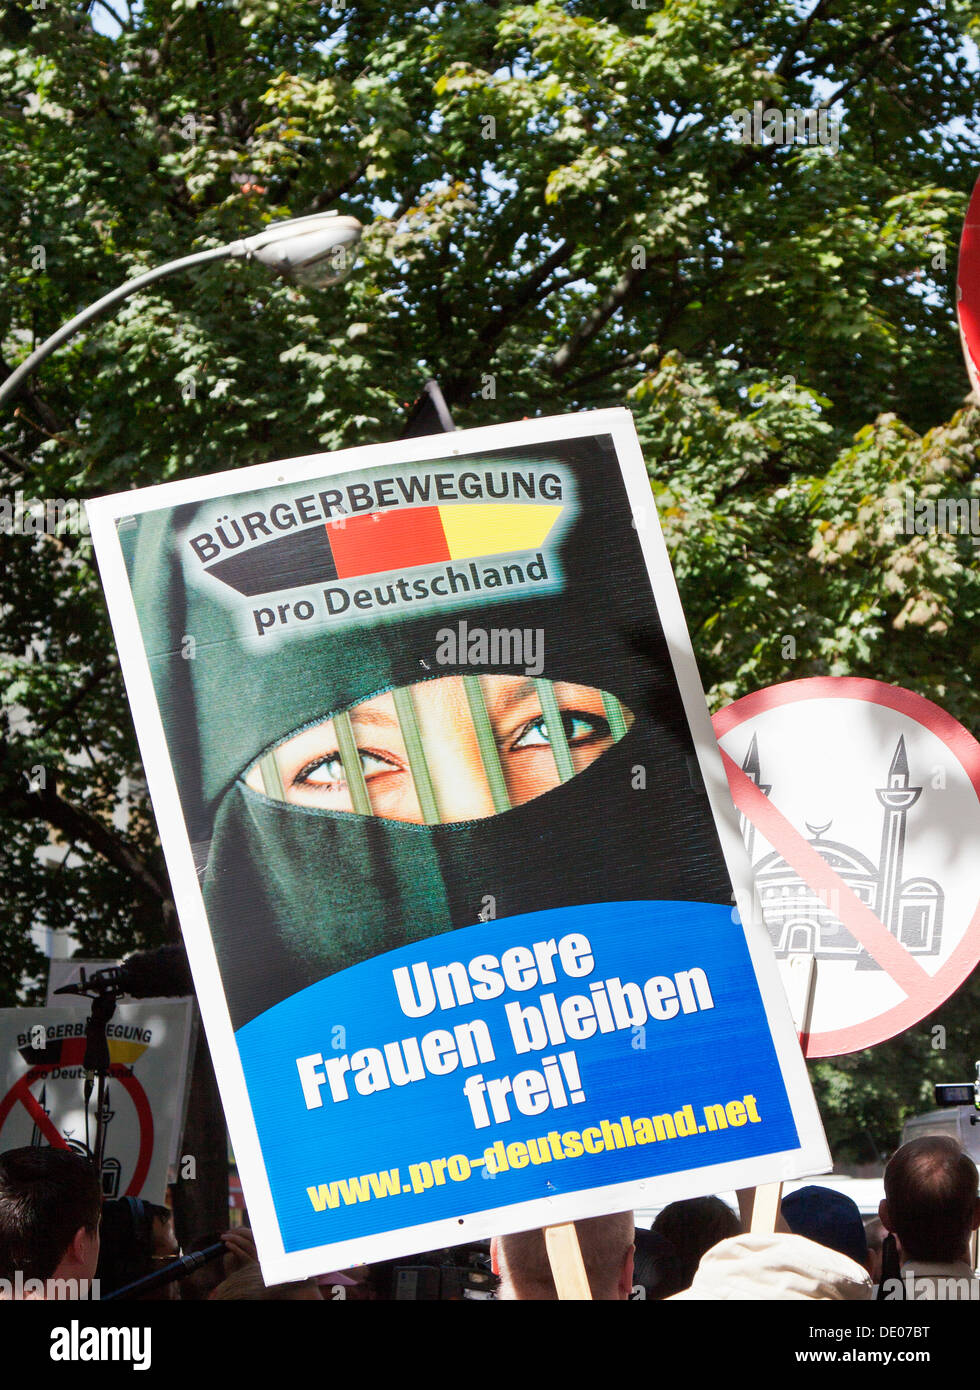 Firmar con una mujer velada, rotulación "Unsere Frauen bleiben frei!', 'alemán para nuestra mujer siendo libre!", los ciudadanos de Alemania Pro Foto de stock